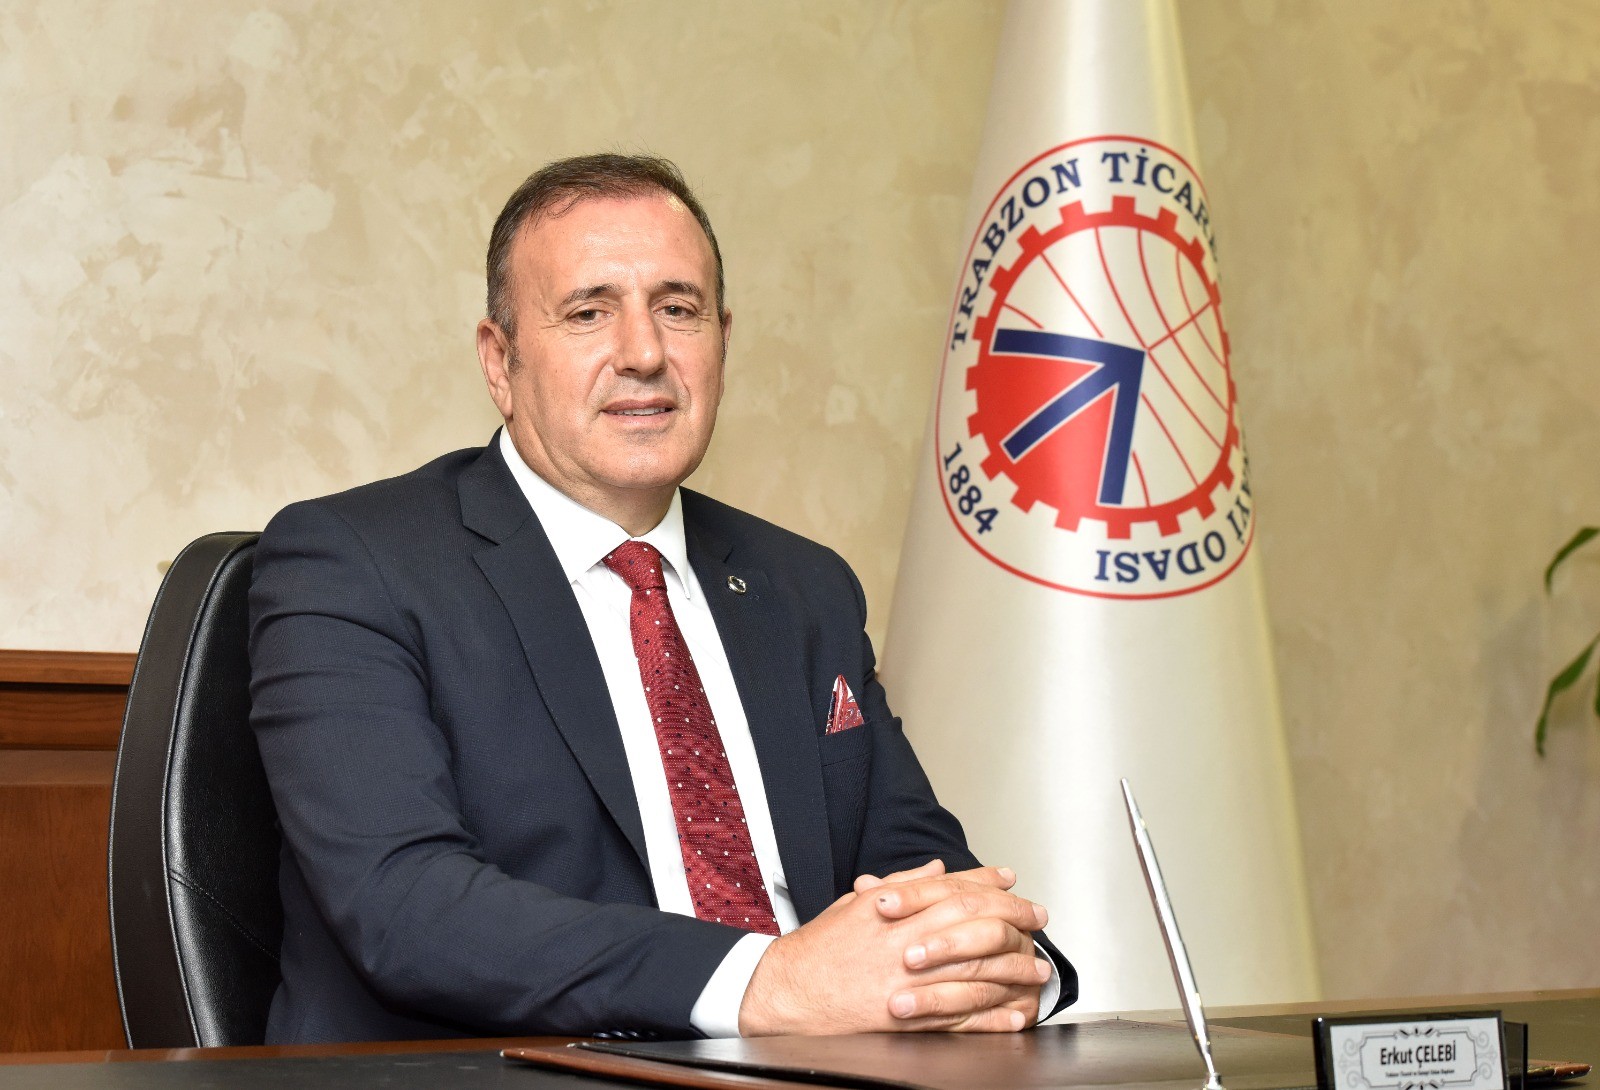 elebi: Trabzona byk talep var, direkt seferlerin artrlmasn bekliyoruz
